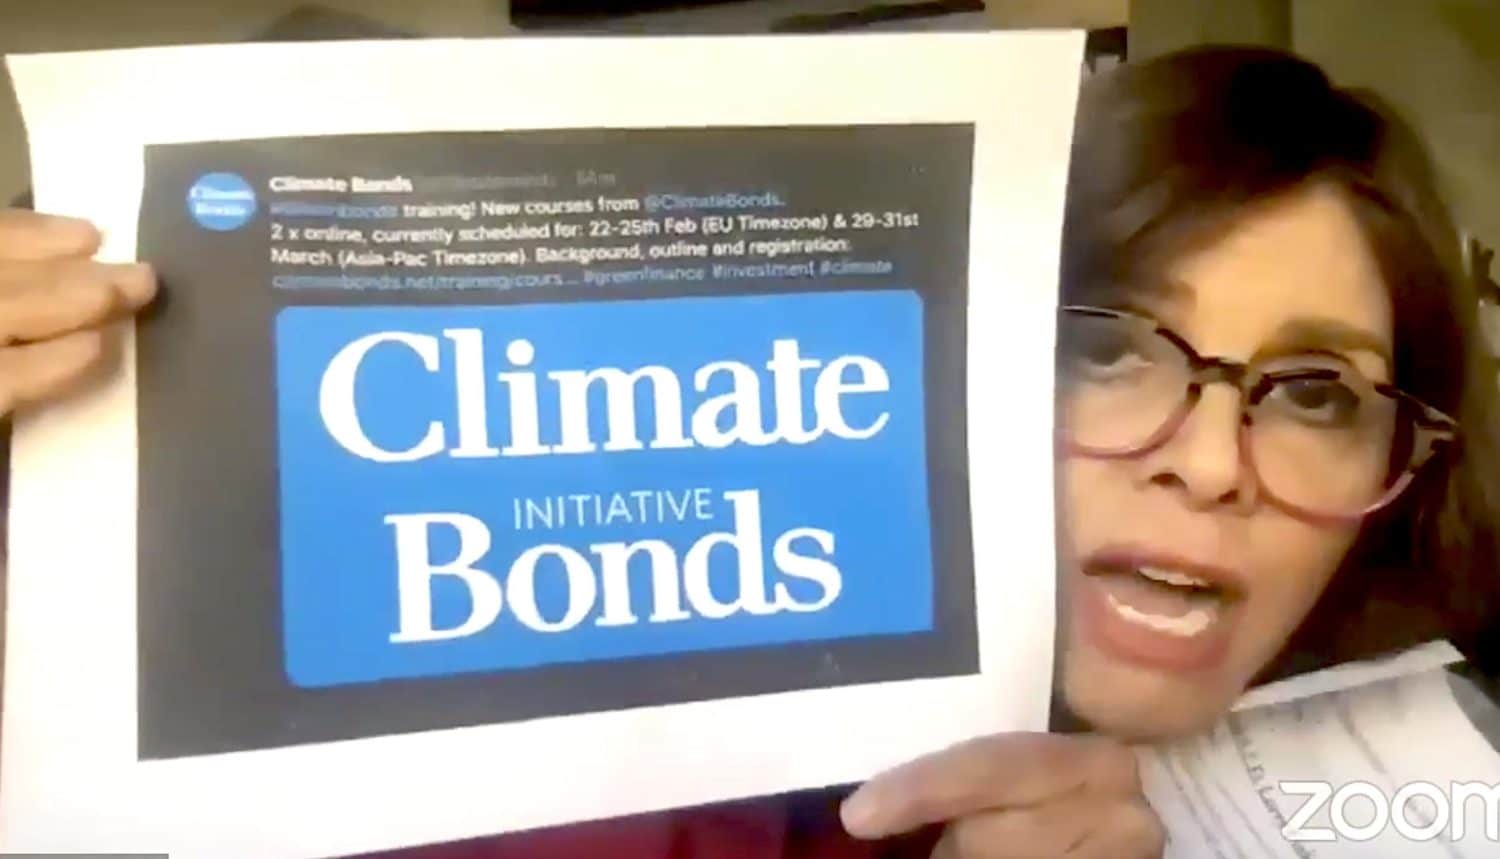 Jane Velez-Mitchell pushes climate bonds